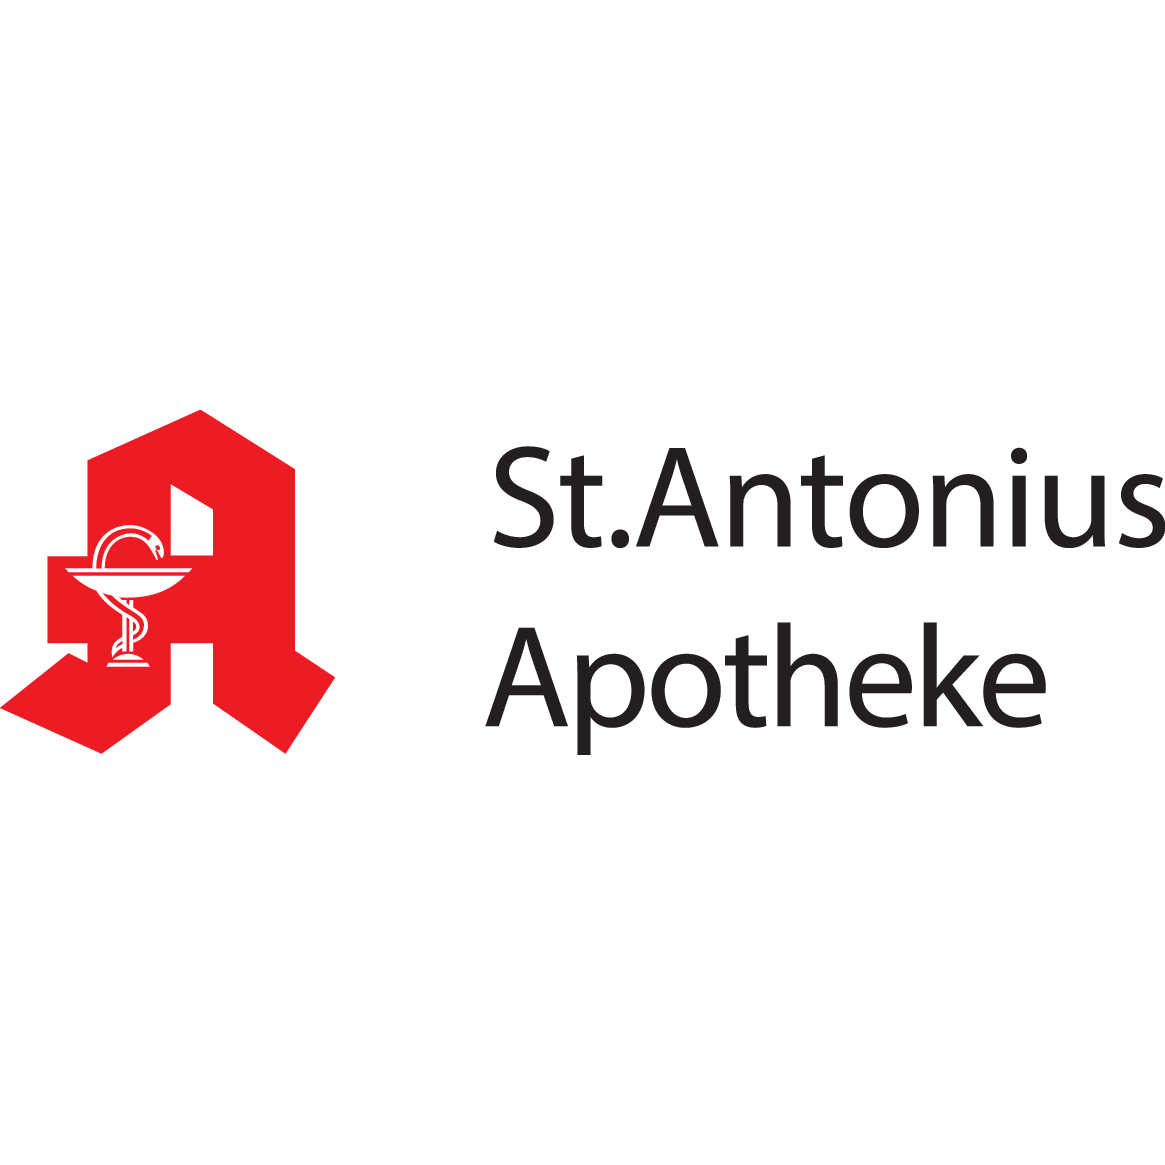 St. Antonius Apotheke in Oberhausen im Rheinland - Logo